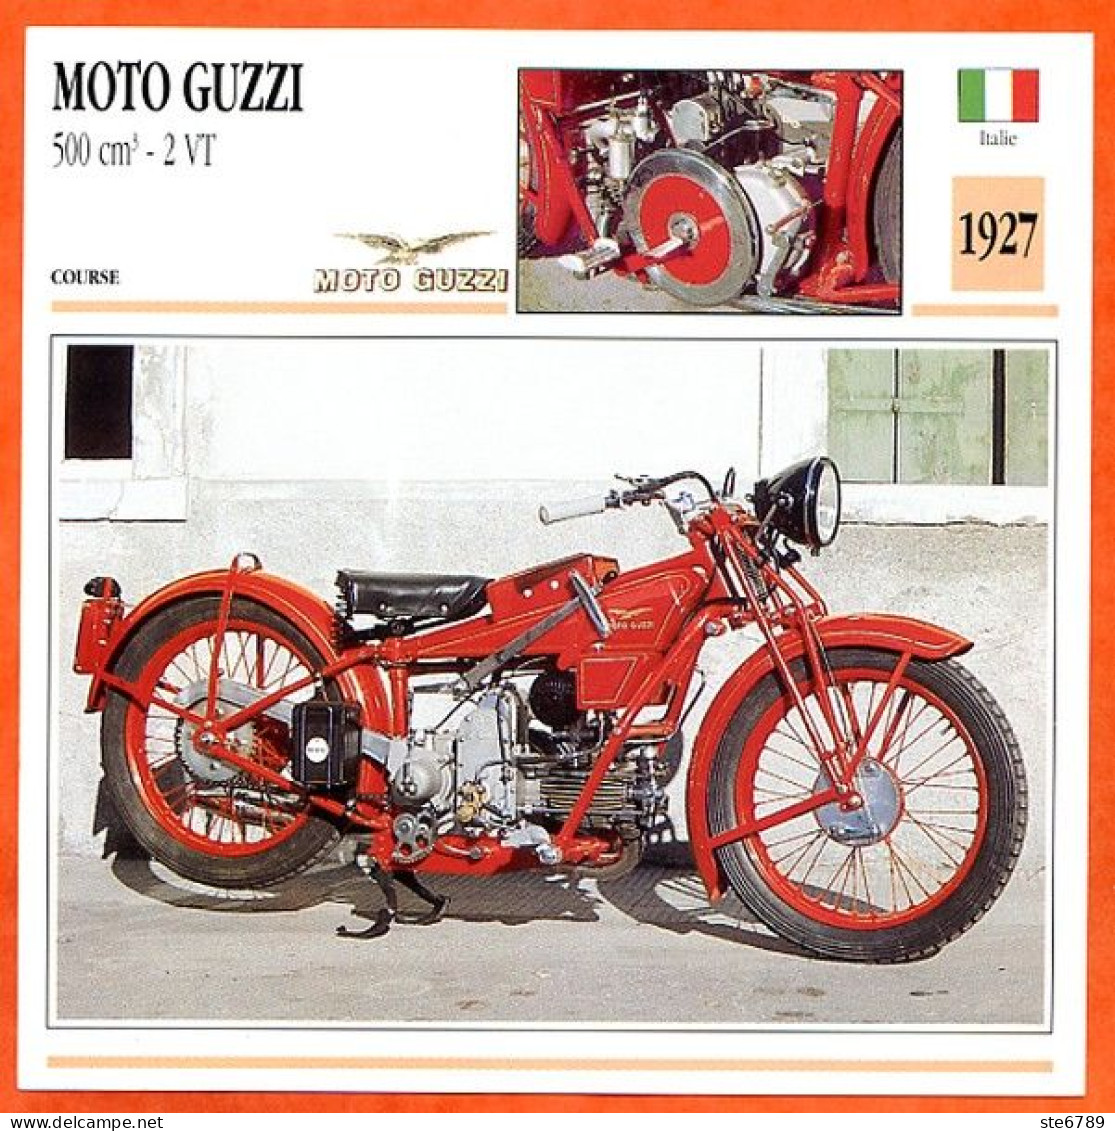 MOTO GUZZI 500 2 VT 1927 Italie Fiche Technique Moto - Sport